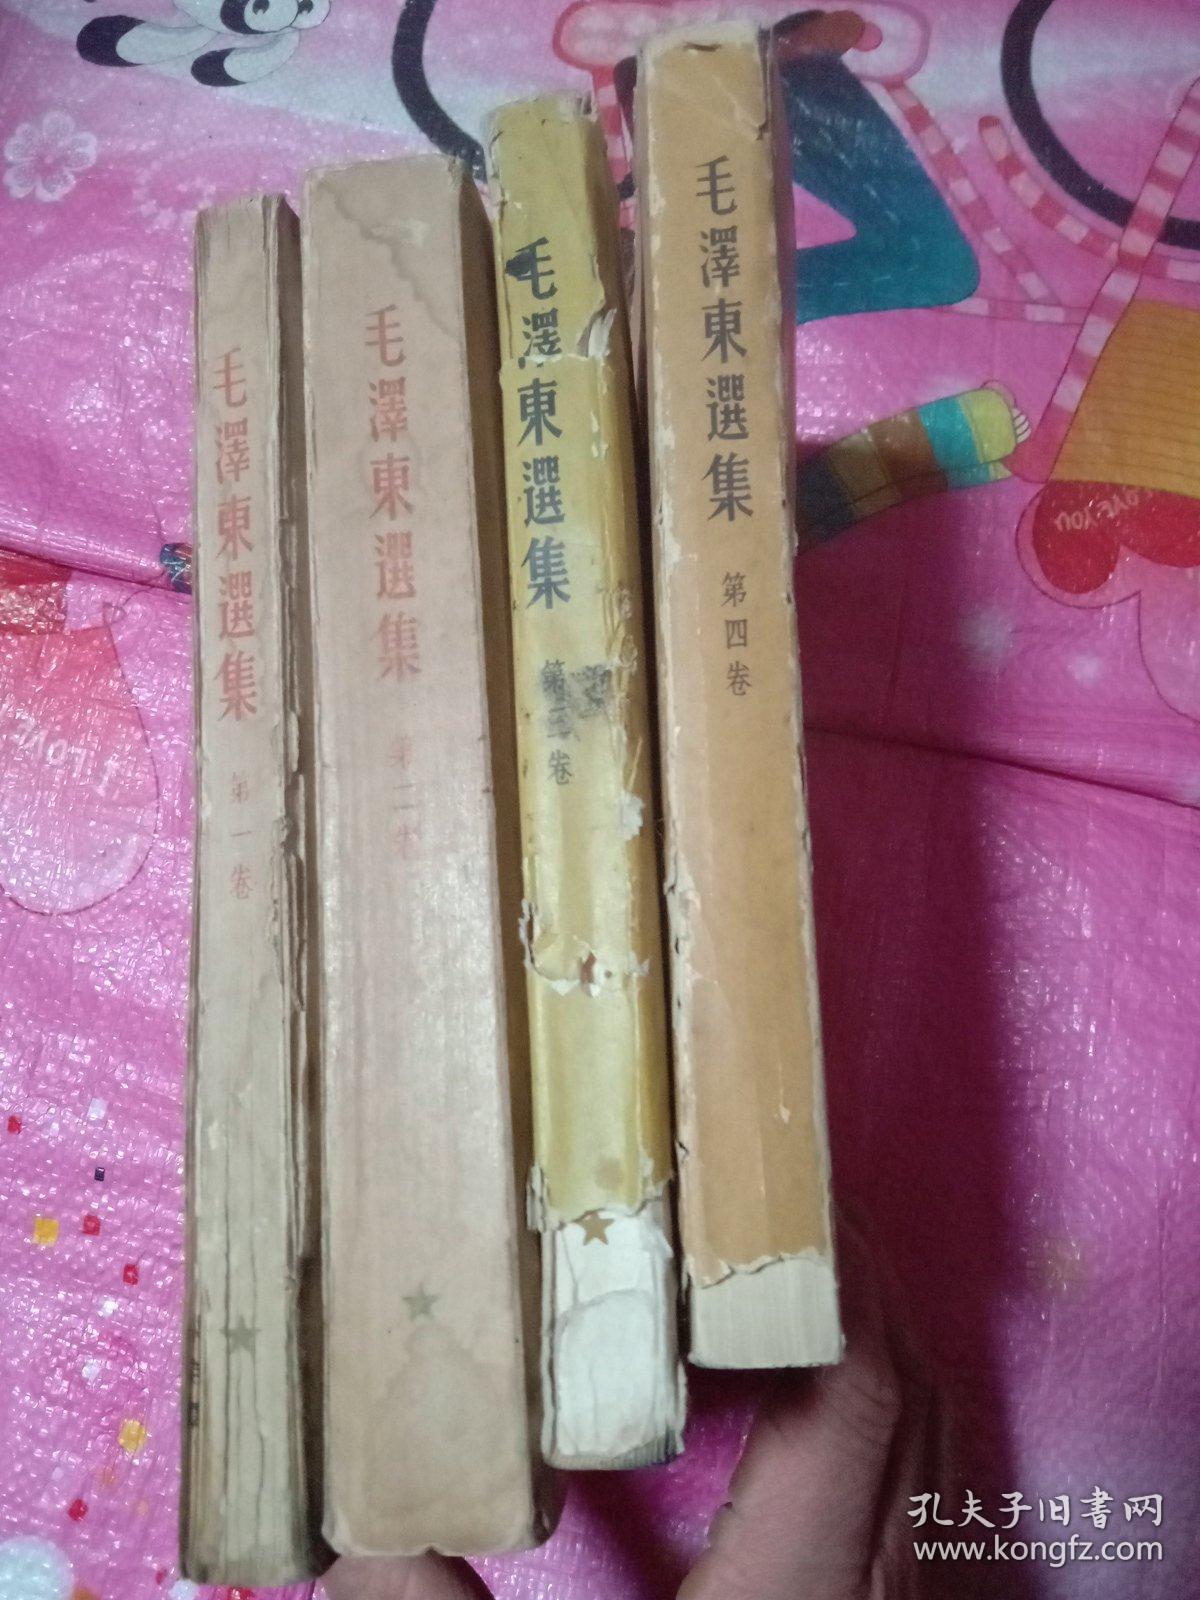 毛泽东选集竖版第一卷、第二卷、第三、四卷（全为北京版一印）